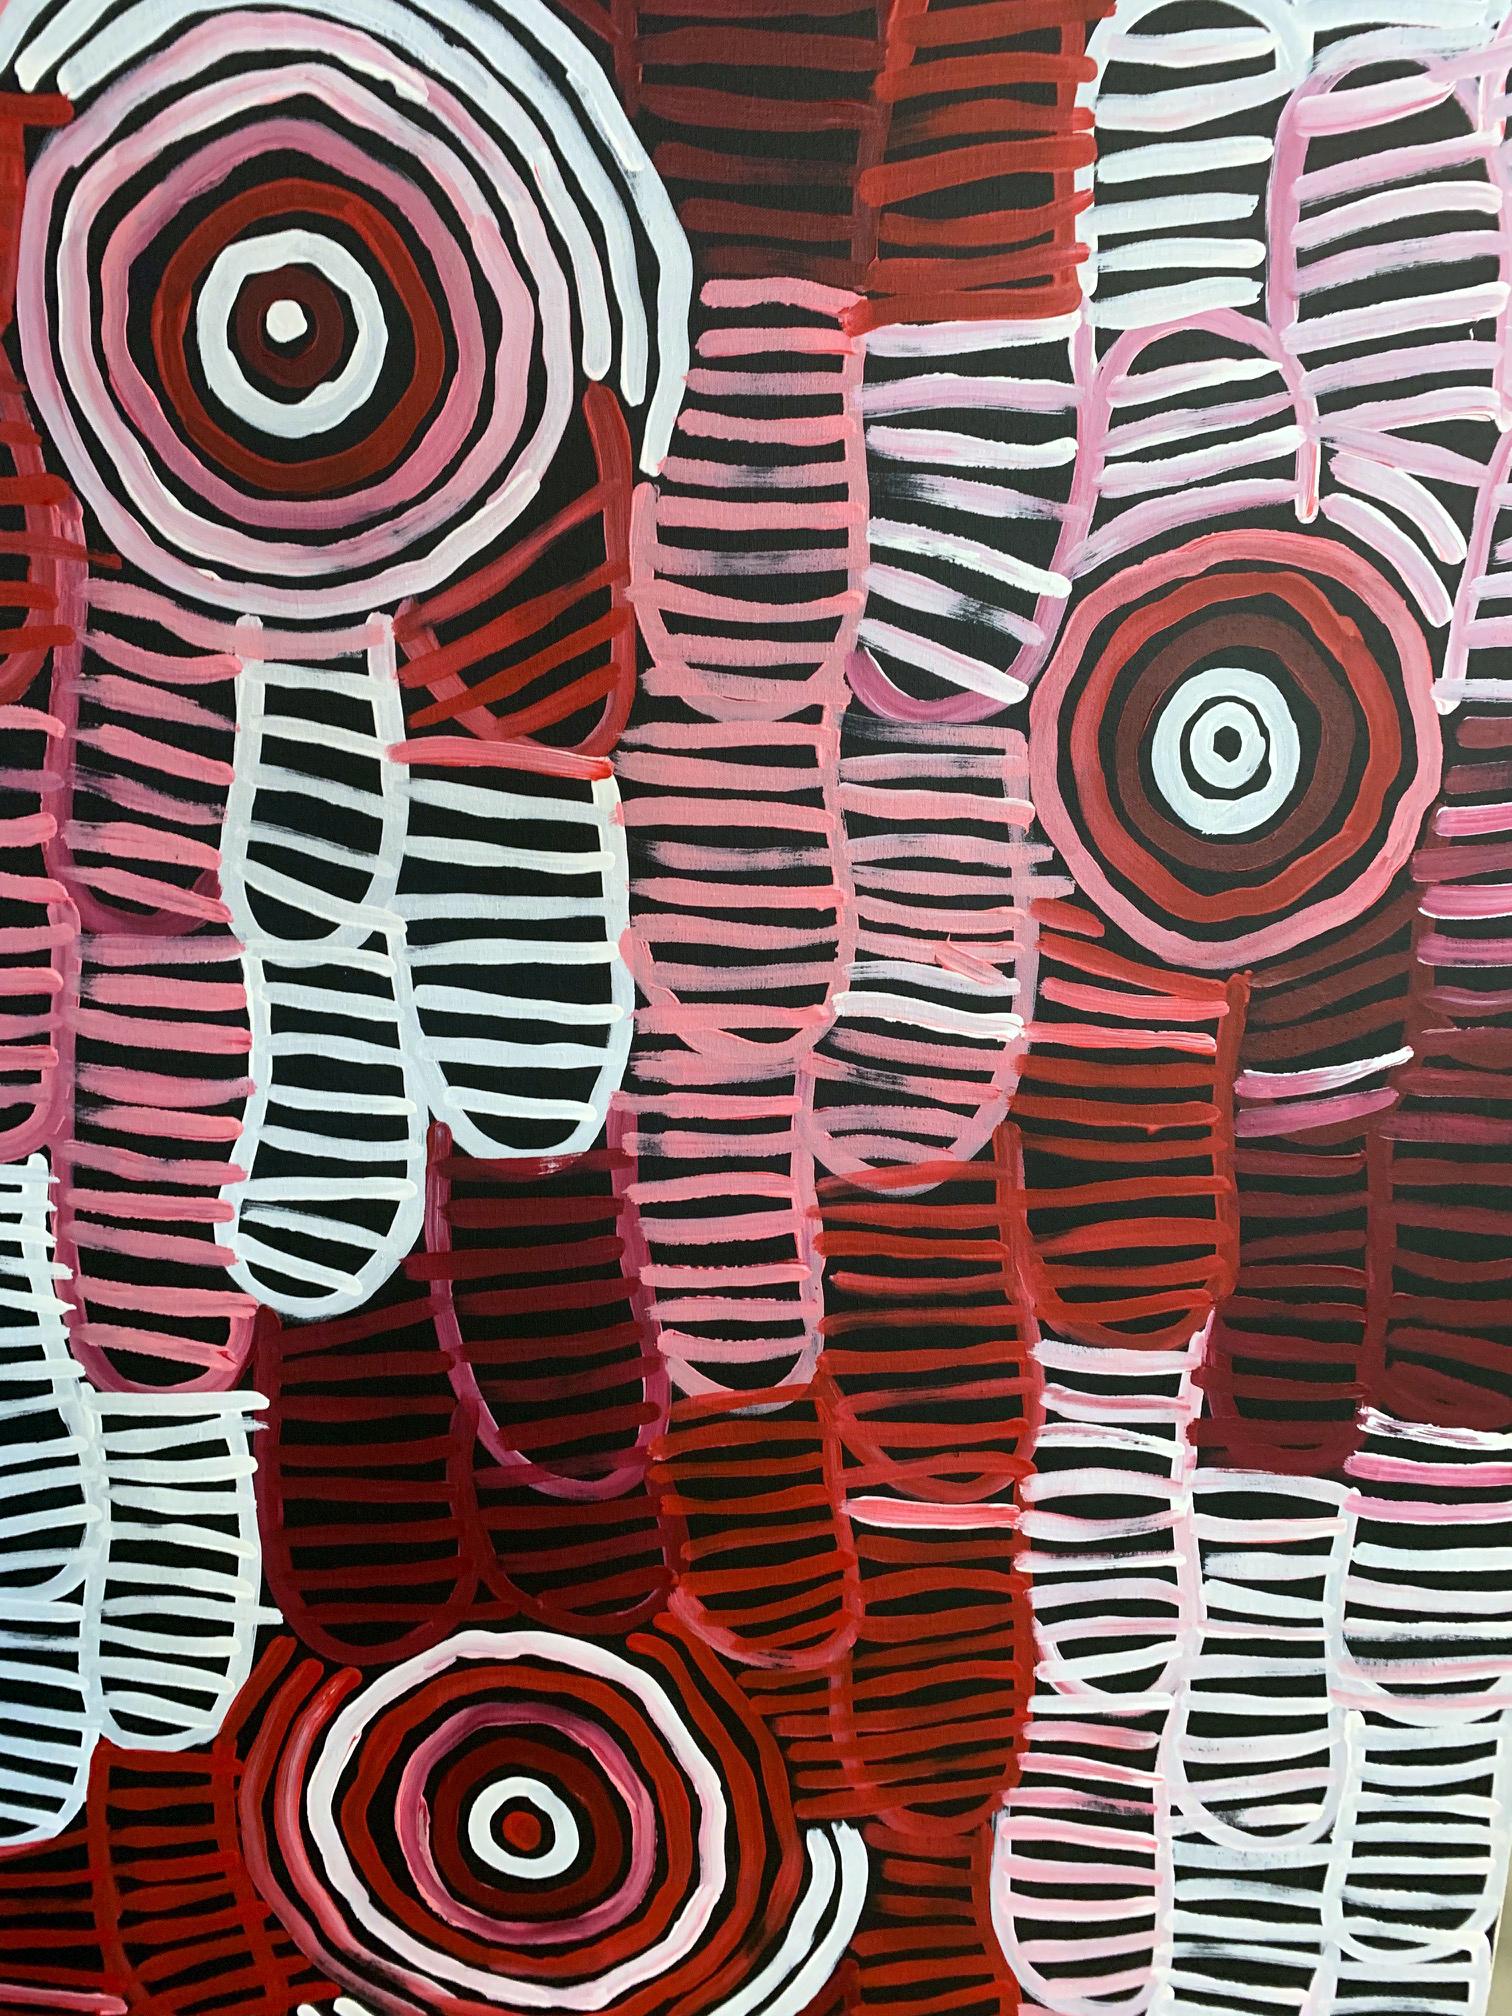 Ein eindrucksvolles Gemälde der berühmten australischen Aborigine-Künstlerin Minnie Pwerle, das ihr Land 